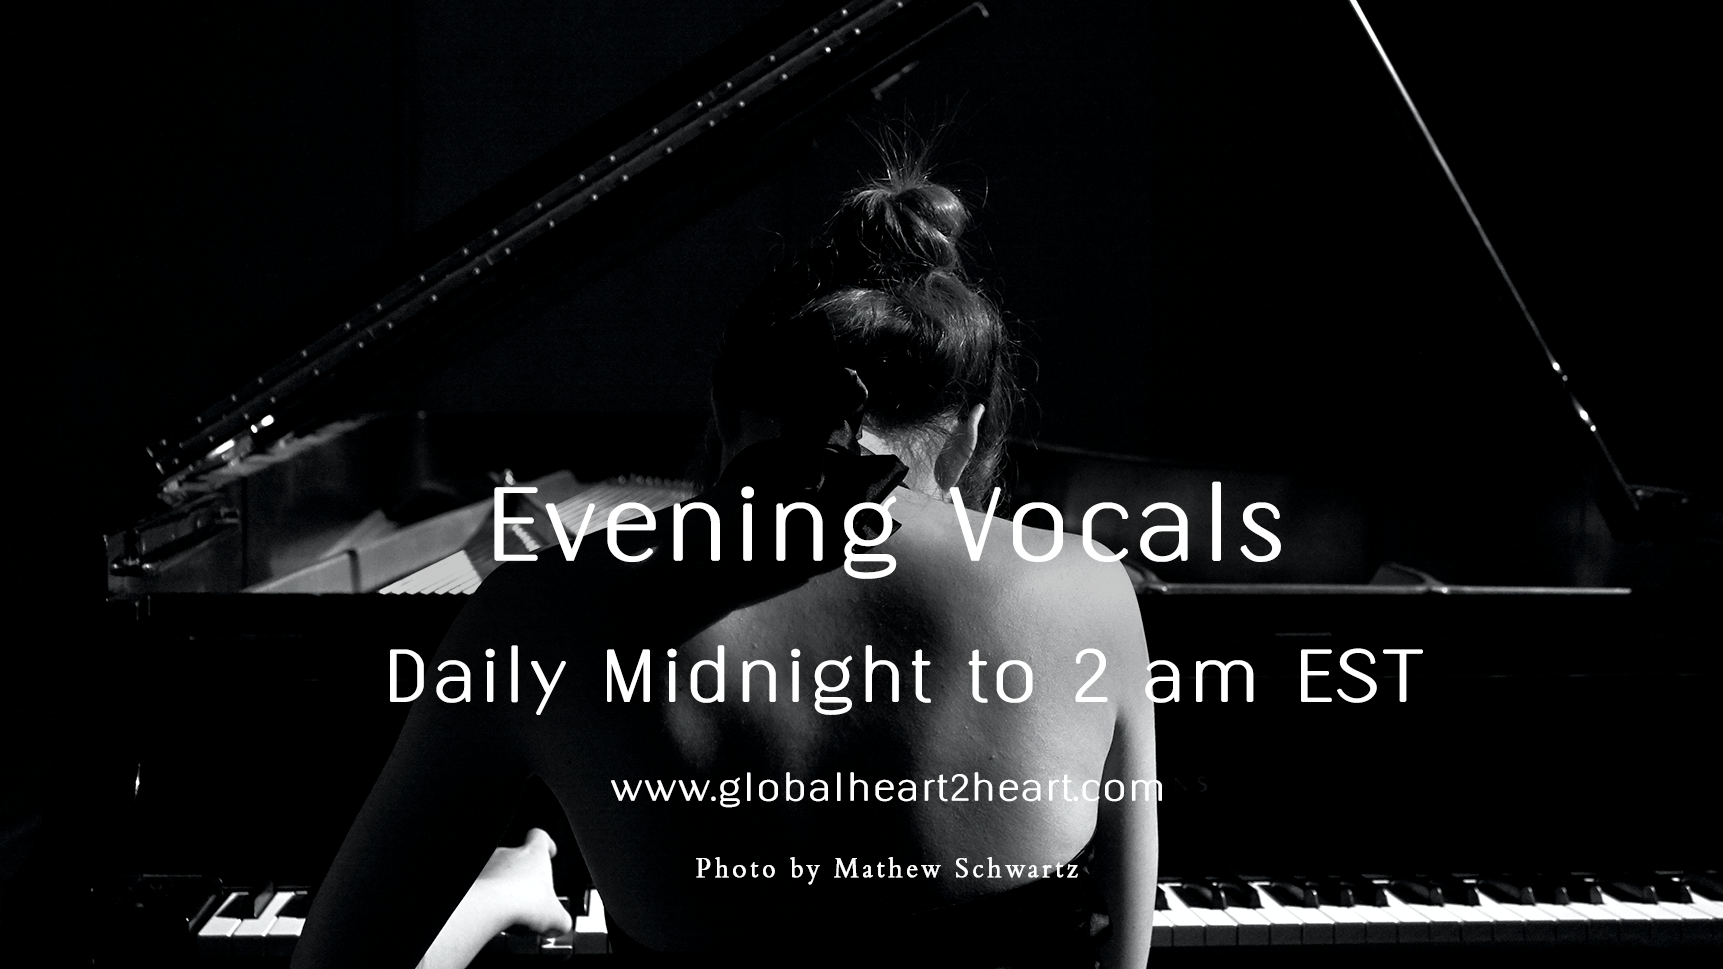 Evening Vocals Global Heart 2 Heart